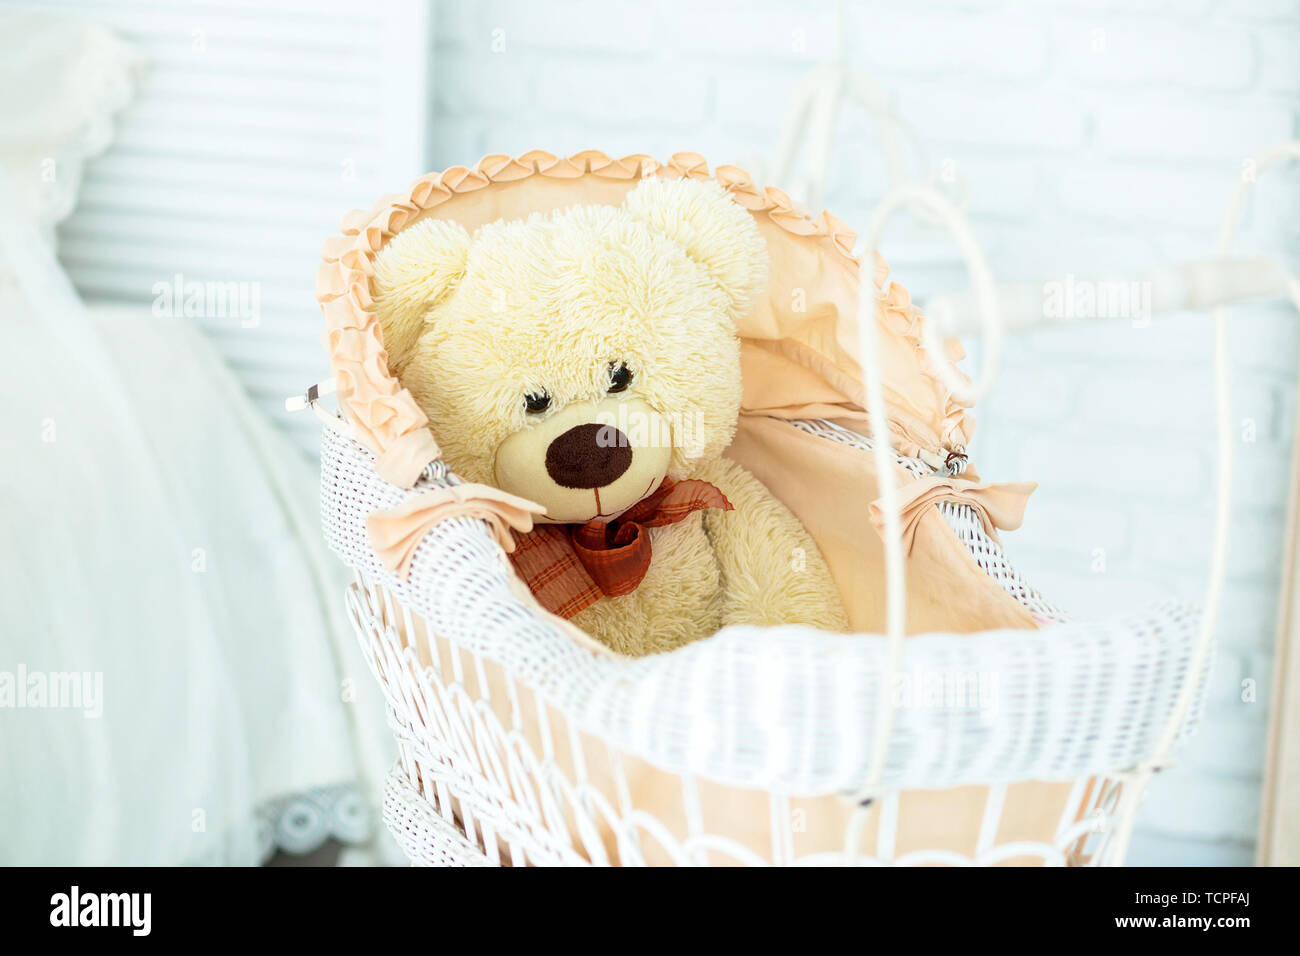 Foto del giocattolo orsacchiotto giace in un contenuto della PRAM Foto Stock